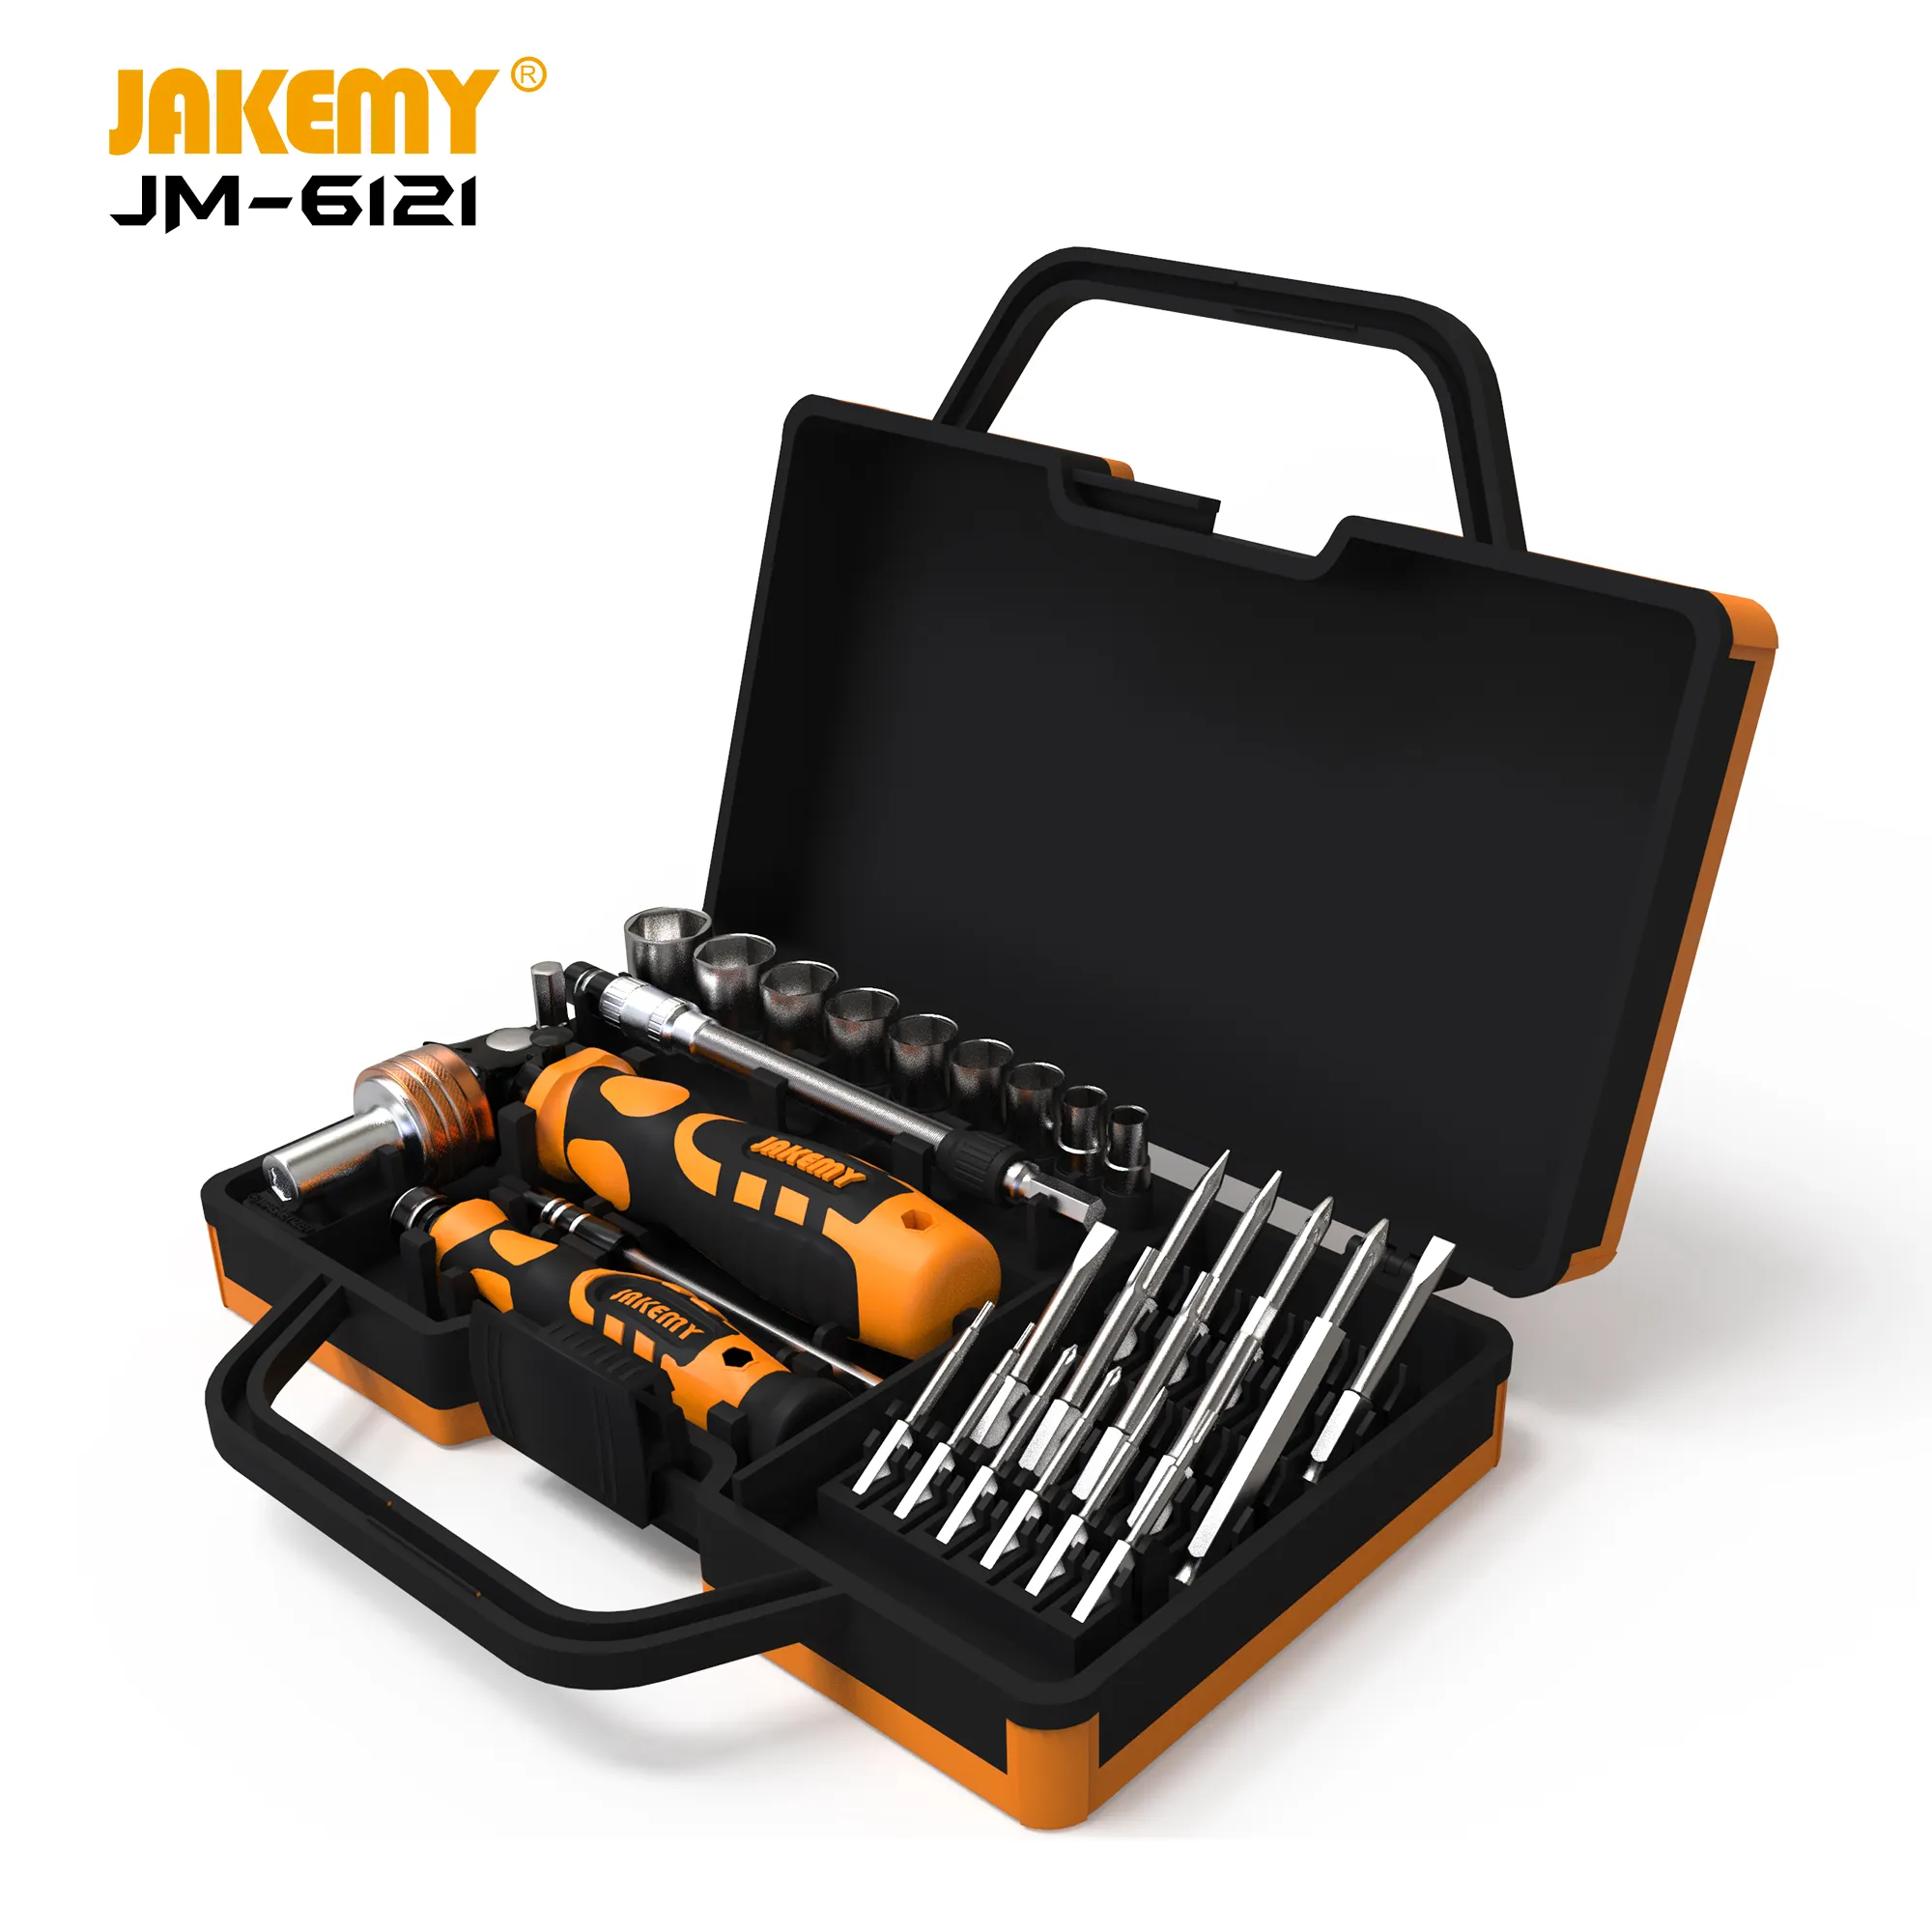 JAKEMY JM-6121 portable repair tools 31pcs in 1 professional diy repair tool kit ratchet screwdriver set for computer